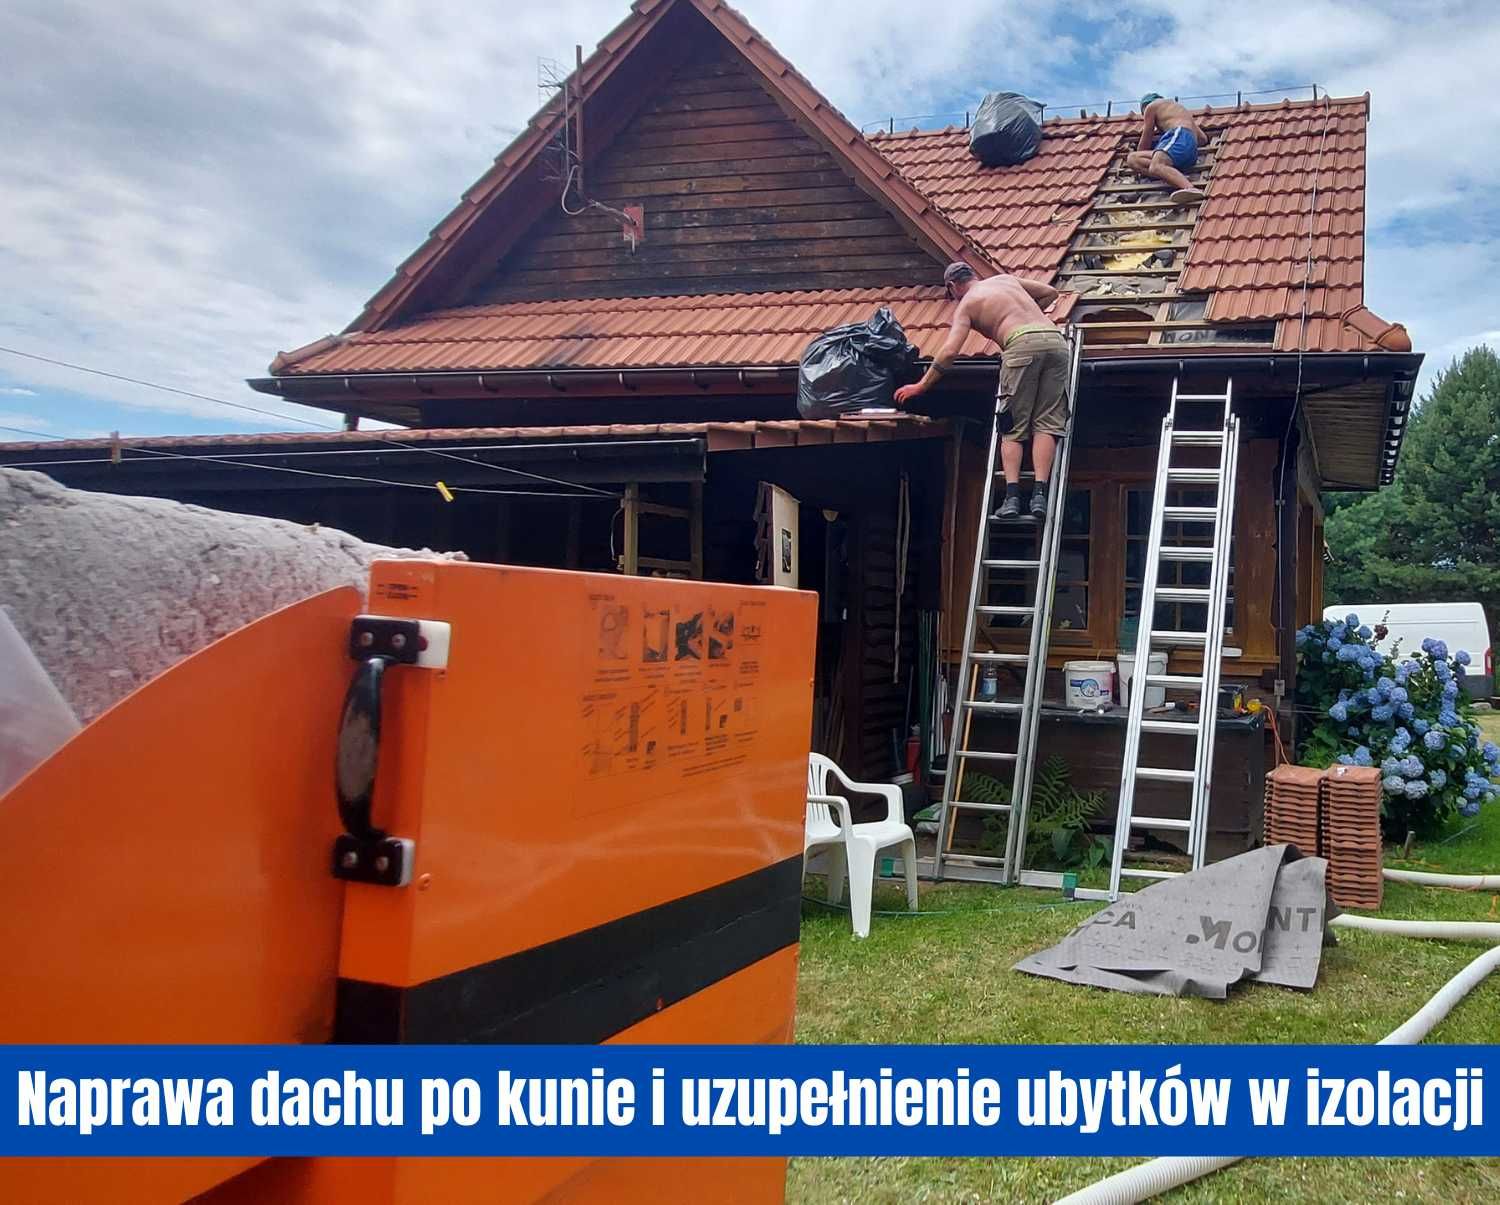 Zwalczanie kuny pastuch na domu i naprawa szkód w dachu Gdańsk